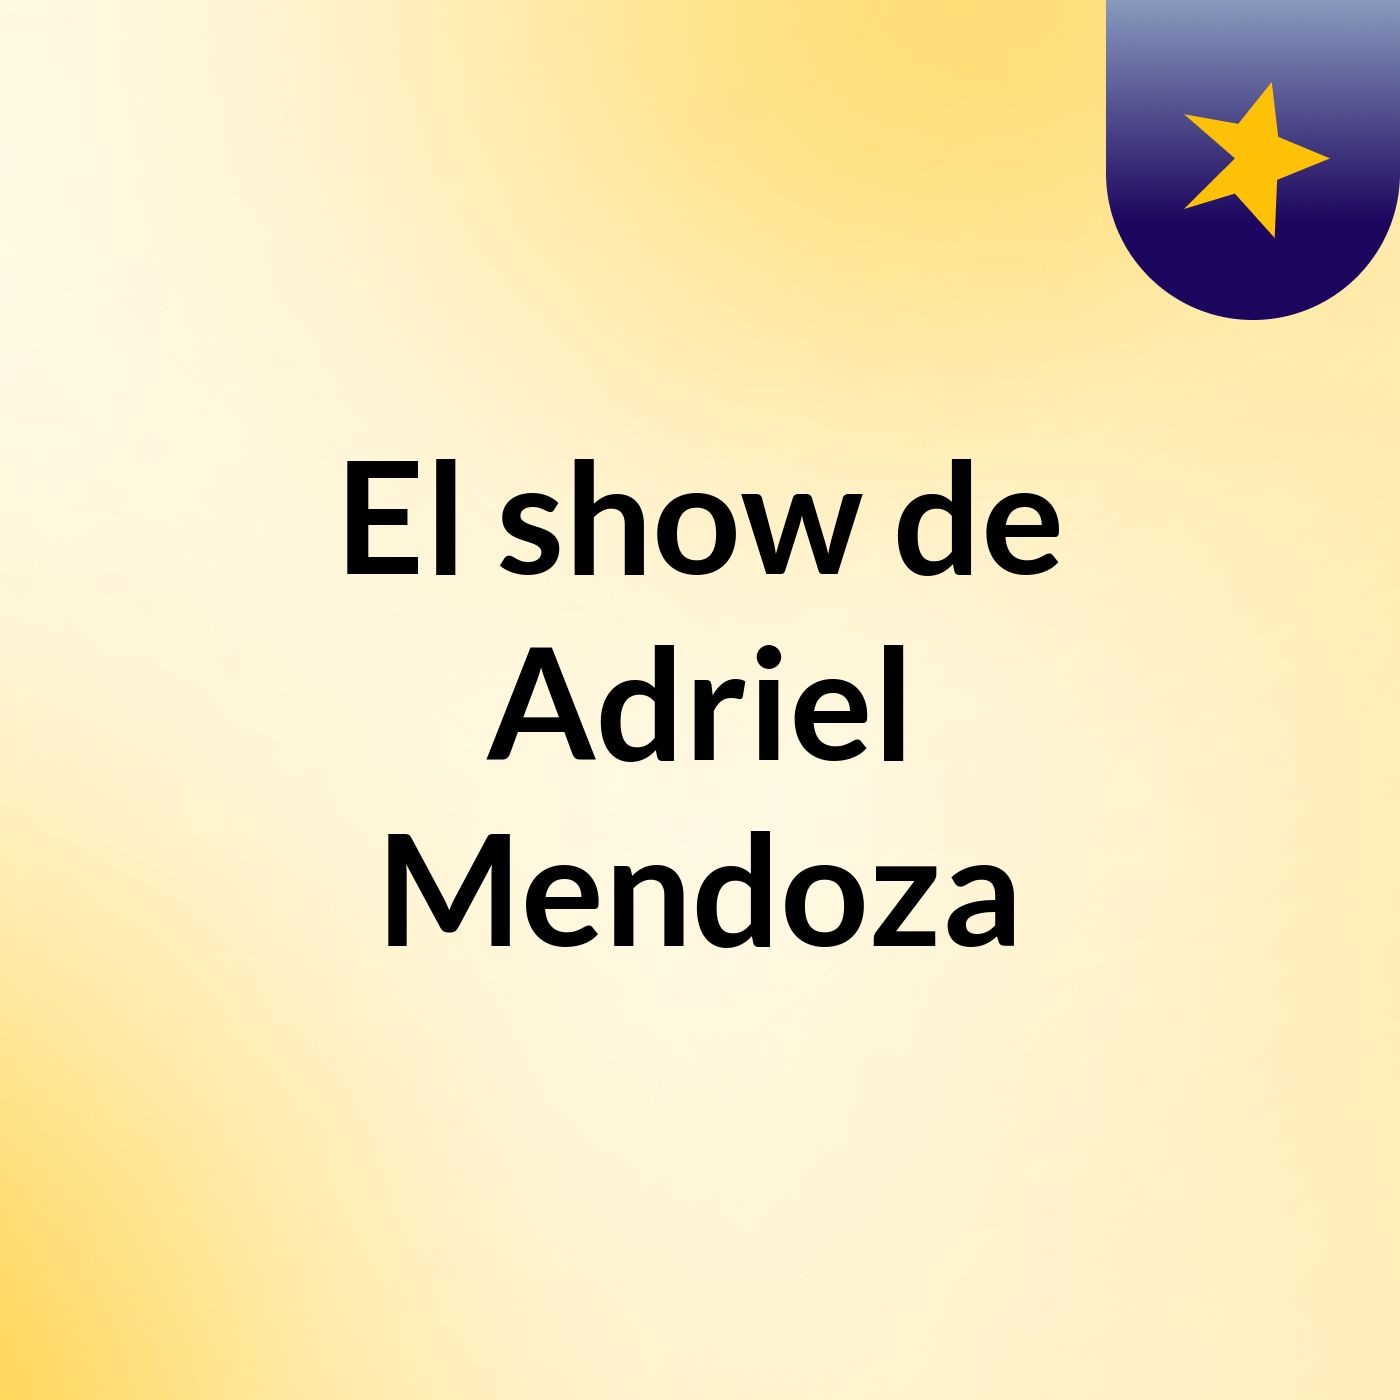 El show de Adriel Mendoza